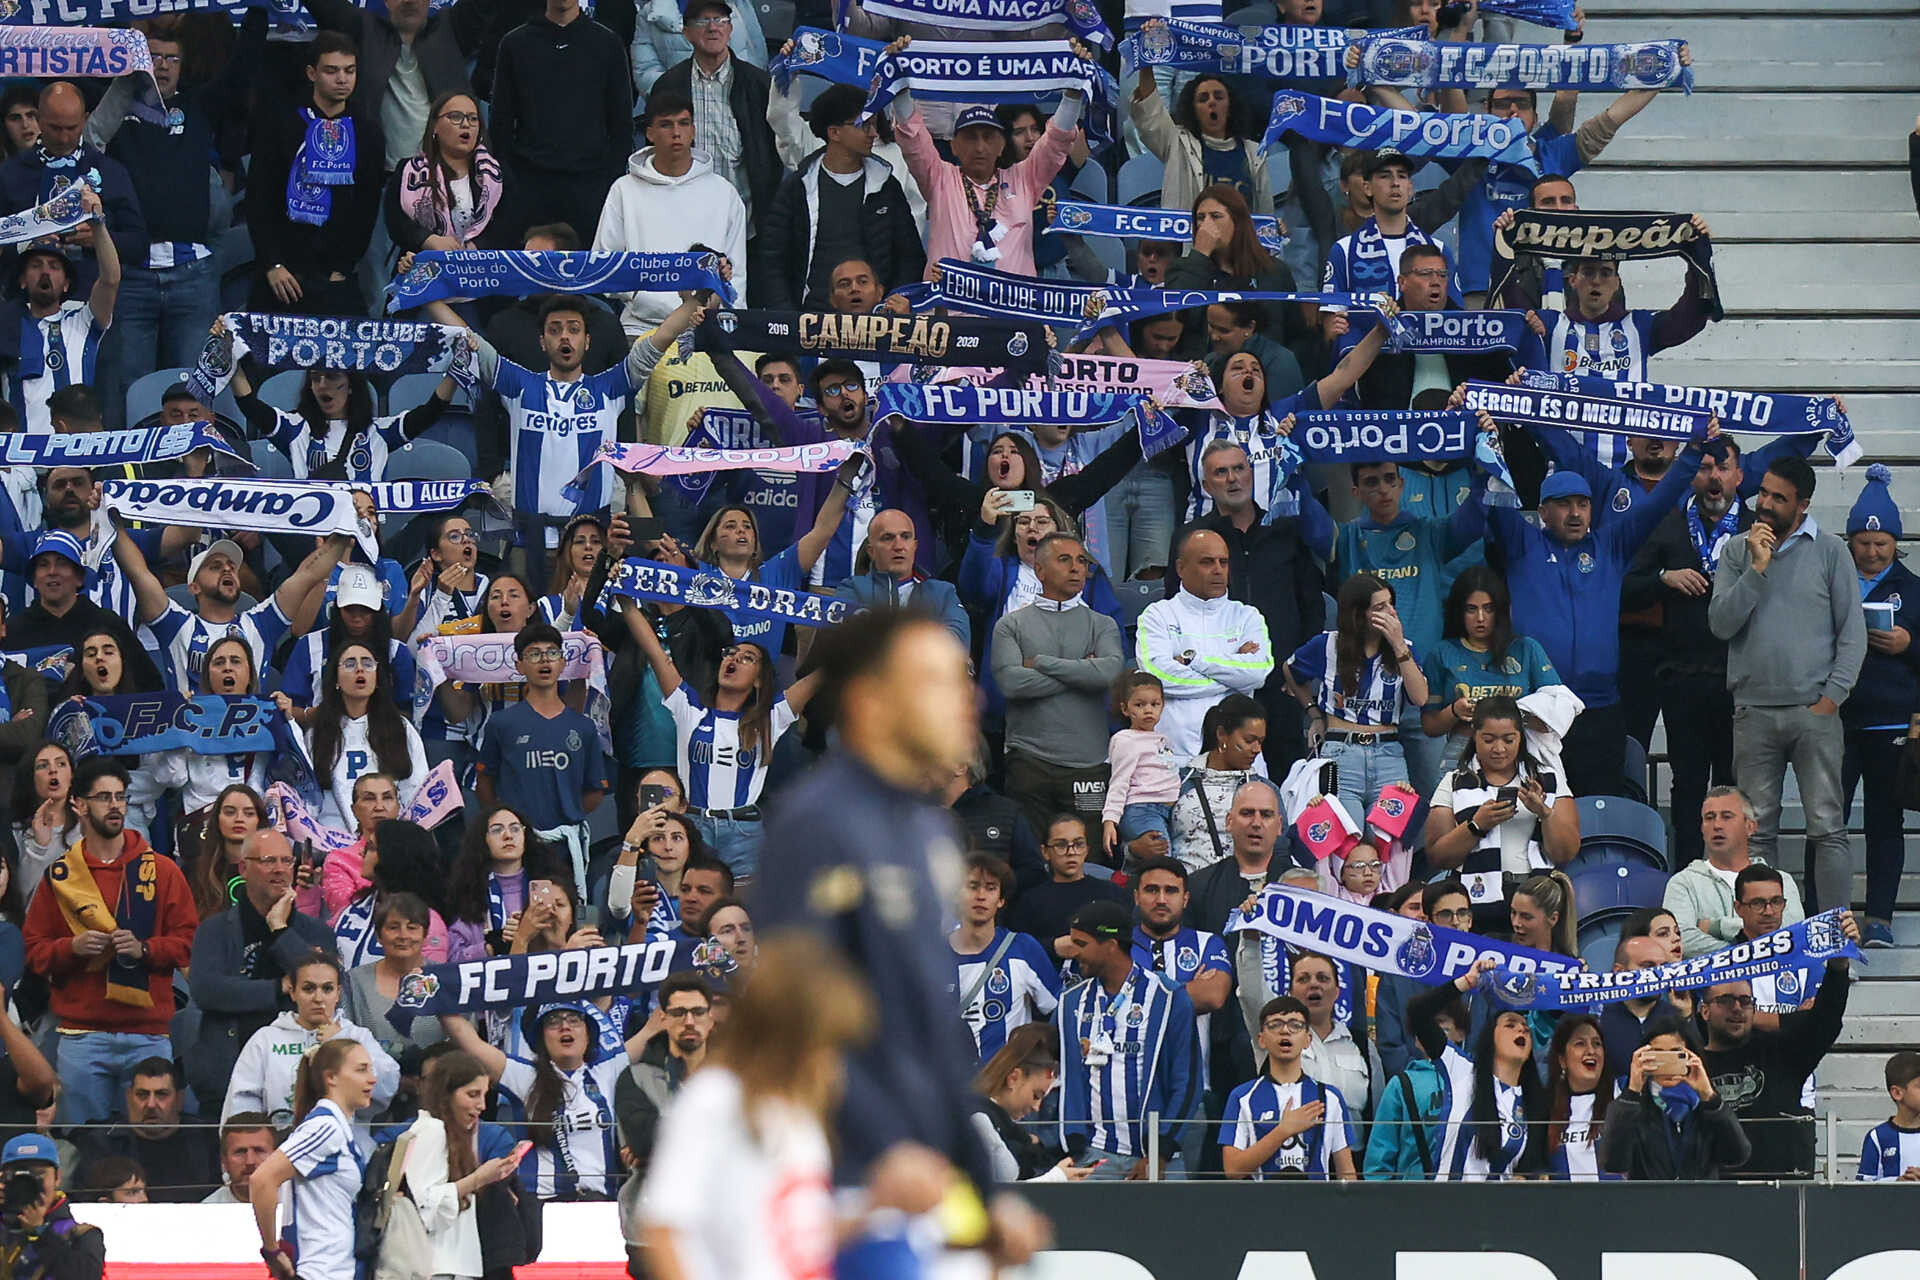 El FC Porto anuncia un aumento del 20% en la venta anual de asientos